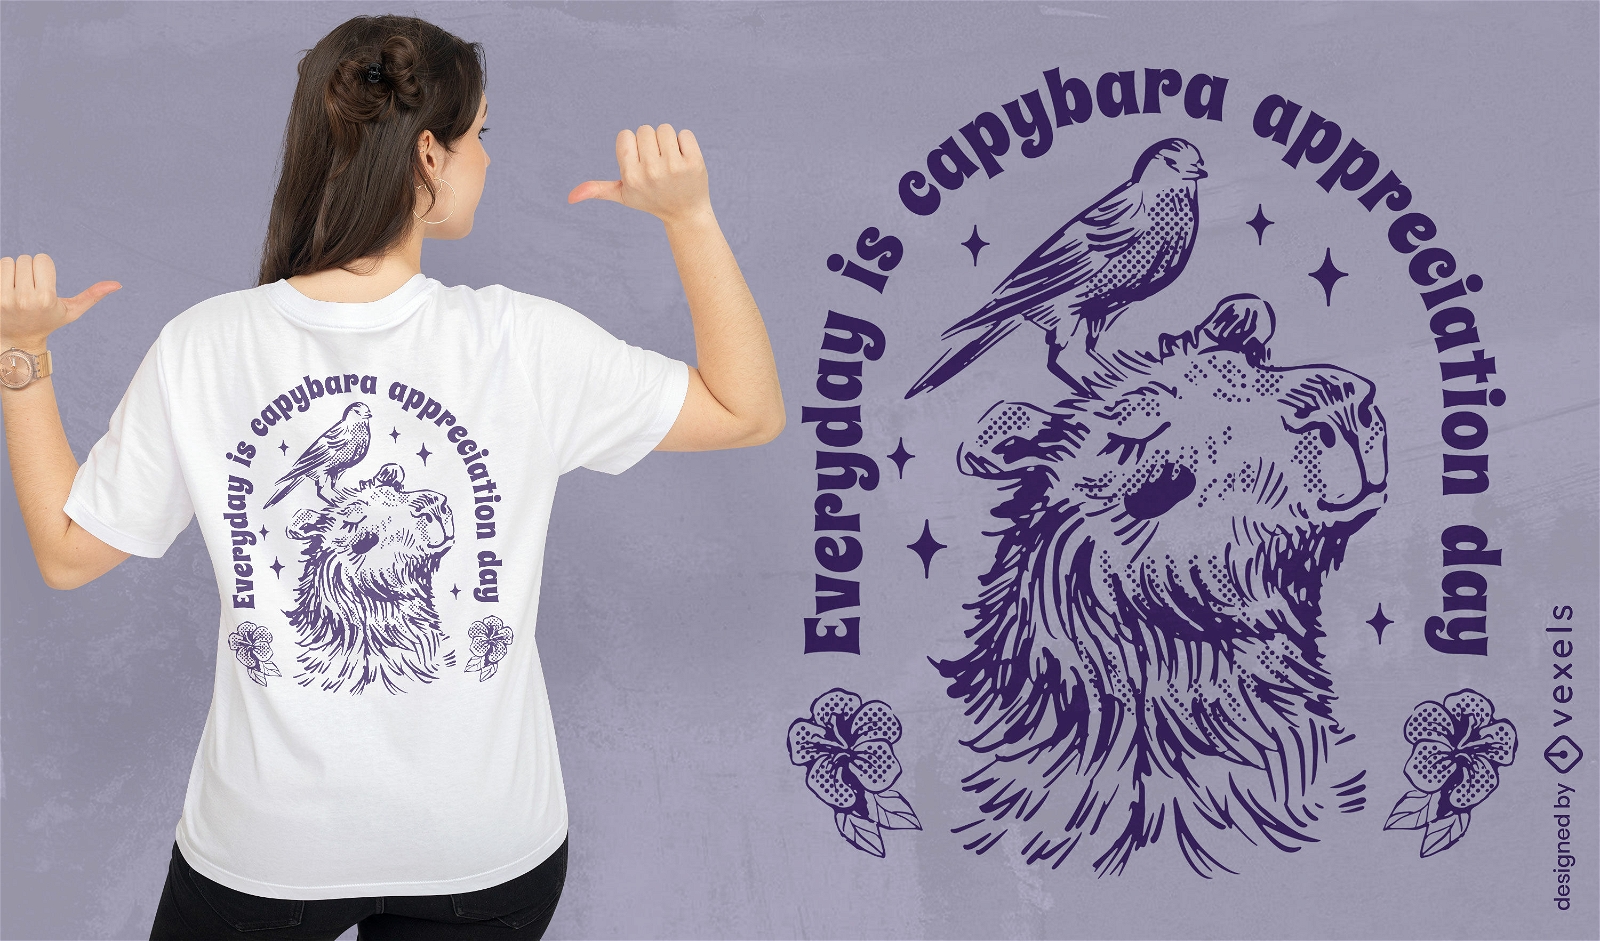 Capybara-Tier- und Vogel-T-Shirt-Design